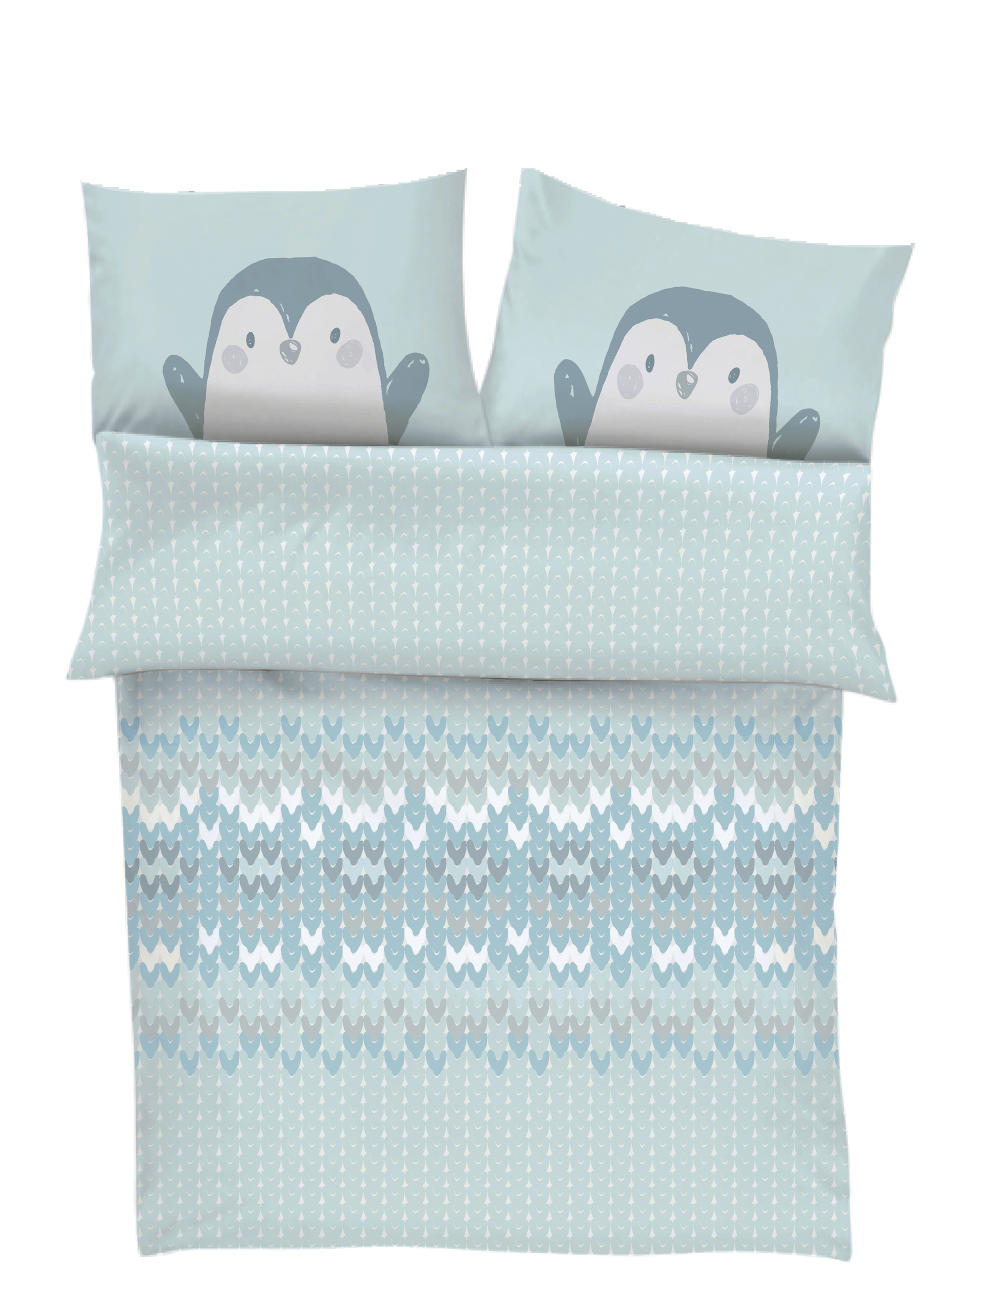 s.Oliver Kinder-Bettwäsche Pinguin 100x135 cm, aus 100% Baumwolle